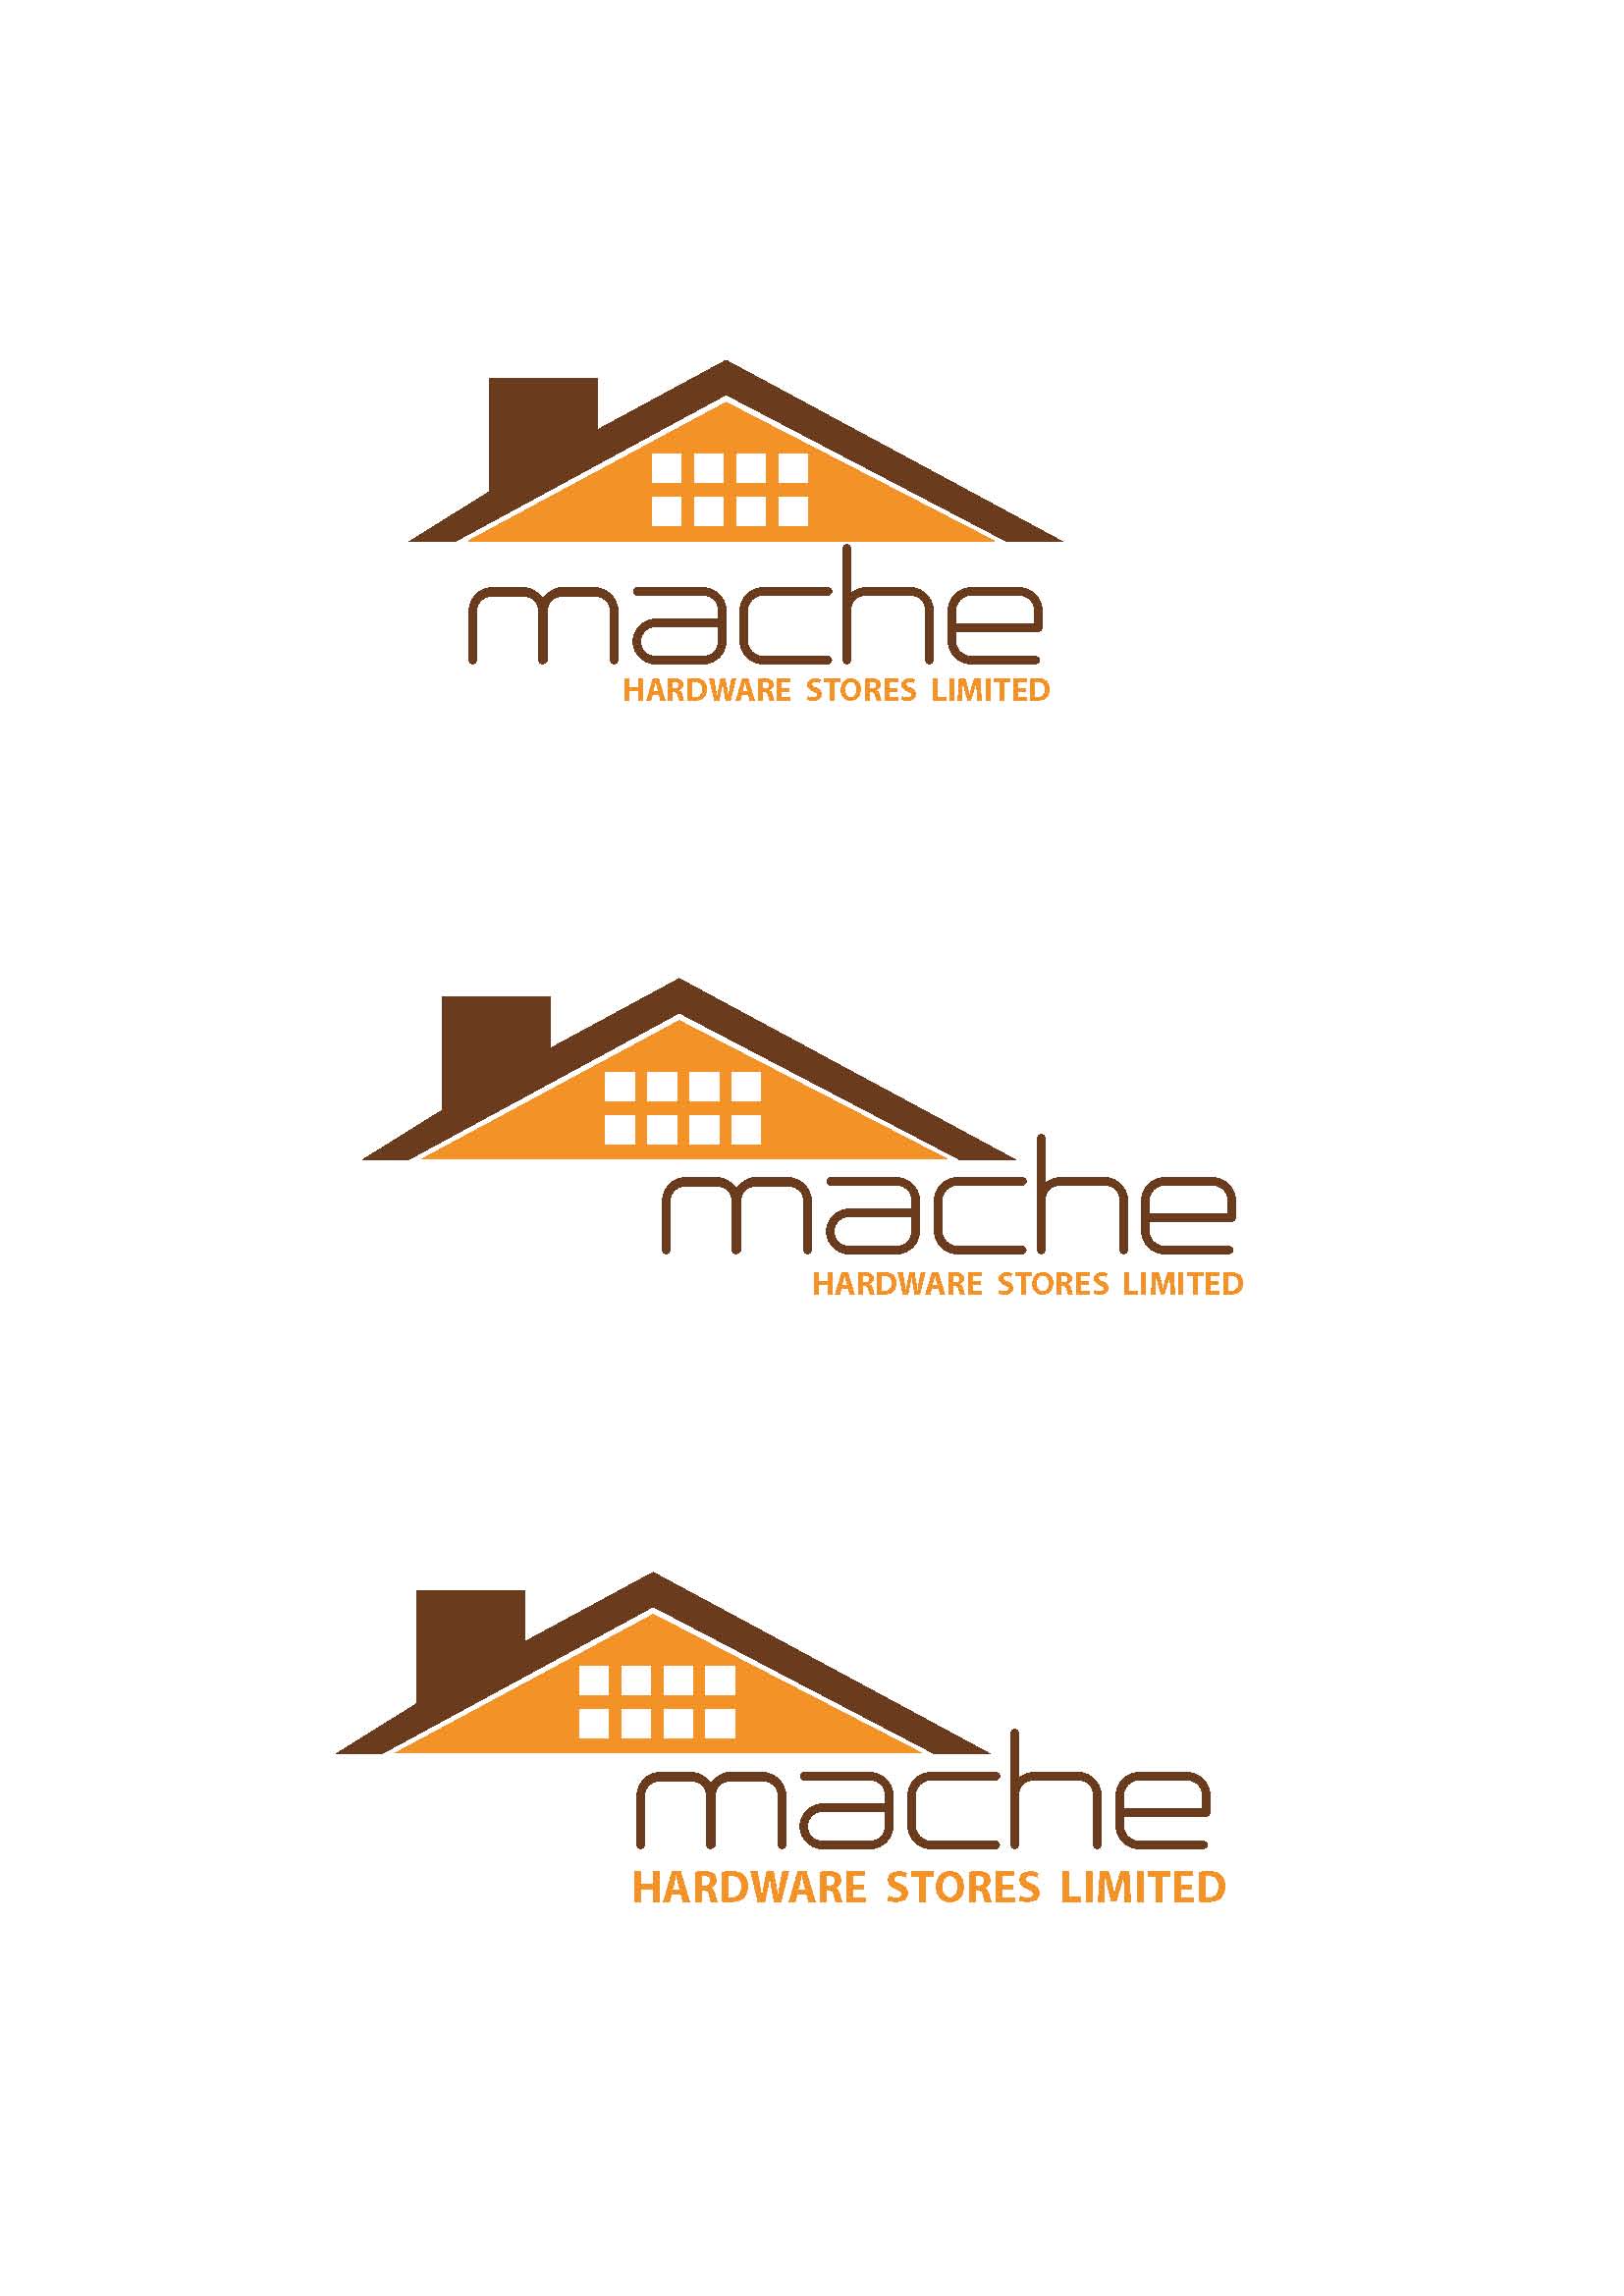 Hardware Logo - Mache Hardware Logo Samples | zambarauconcepts